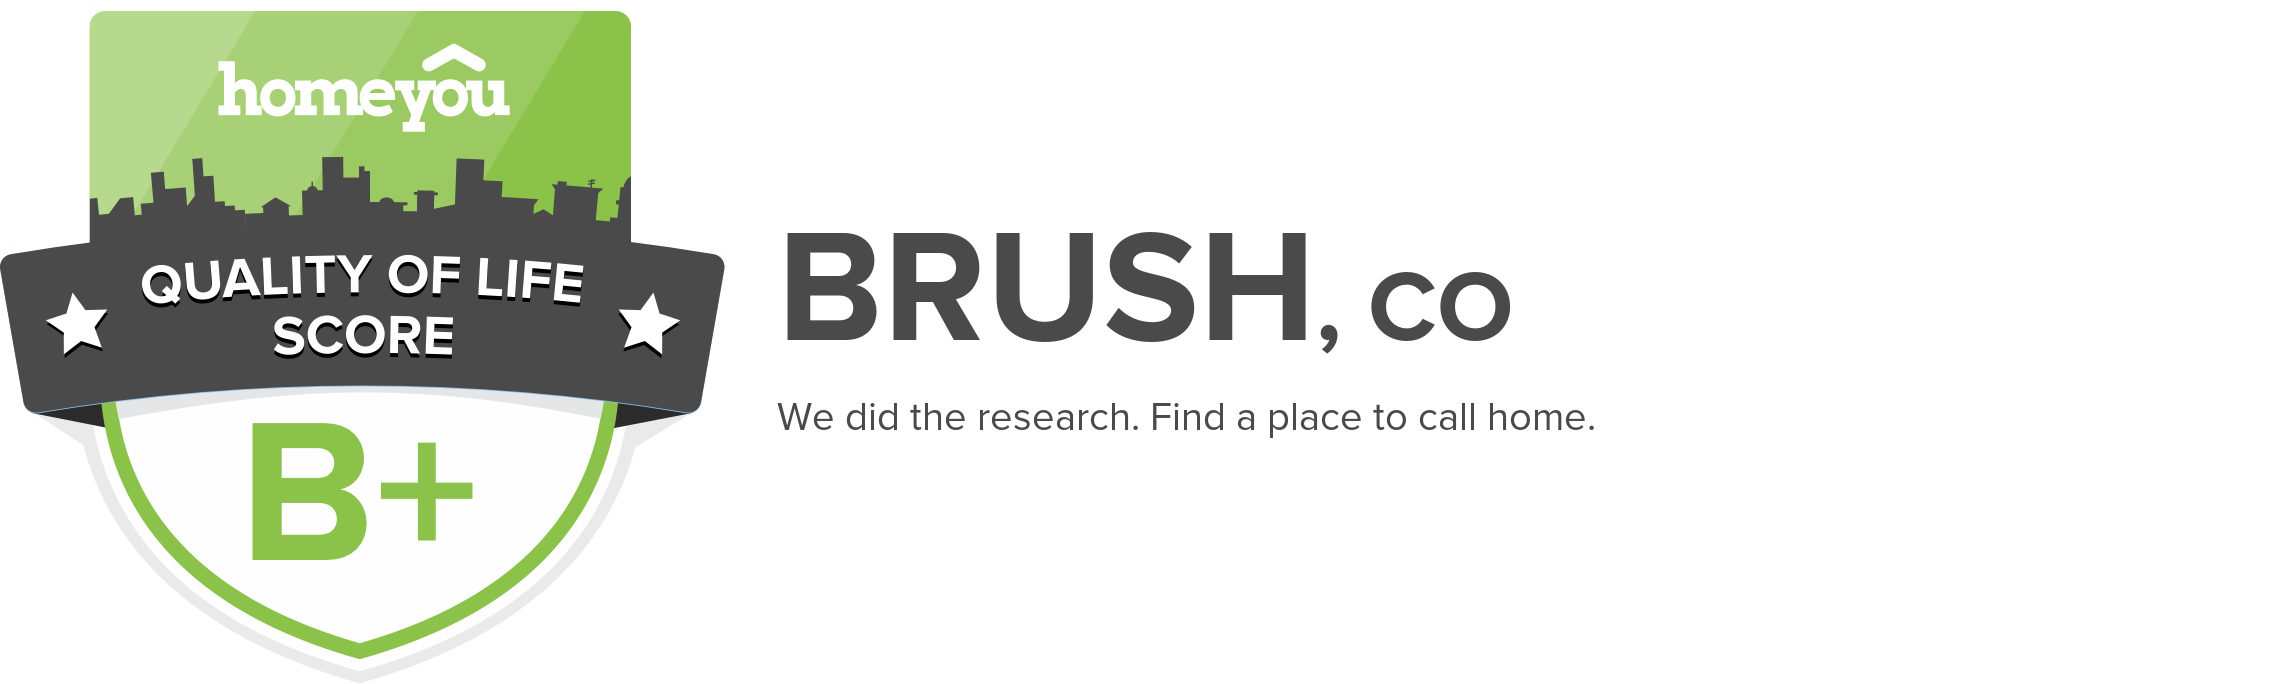 Brush, CO